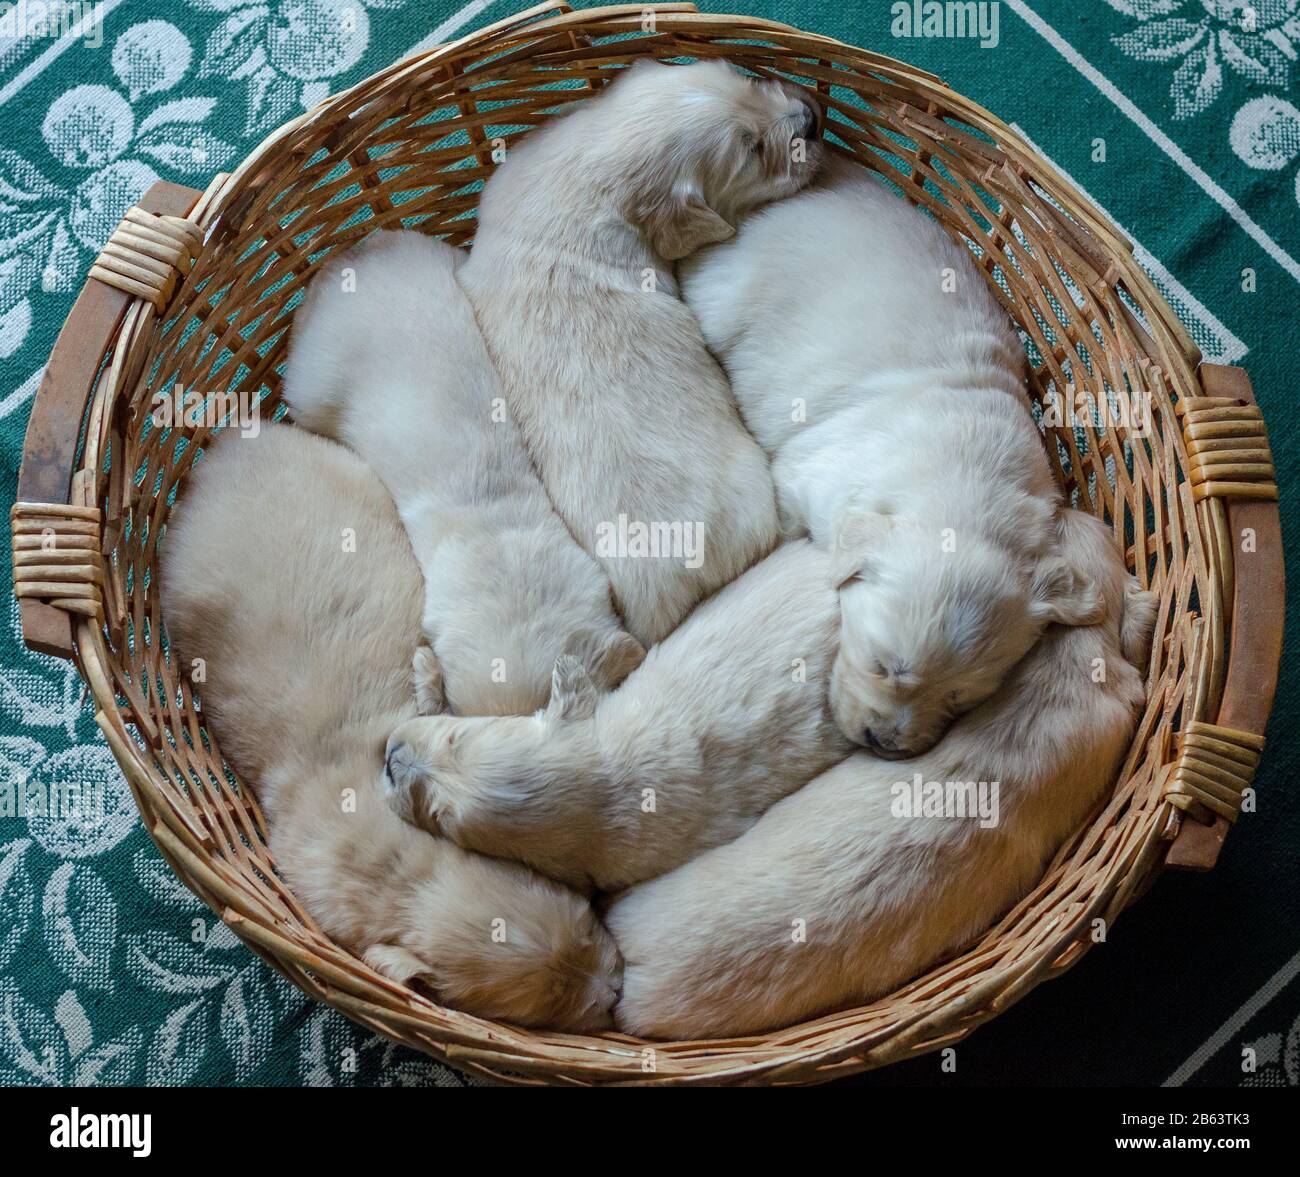 Retrato de una camada de un adorable cachorros de oro o bebés durmiendo en una cesta de mimbre Foto de stock